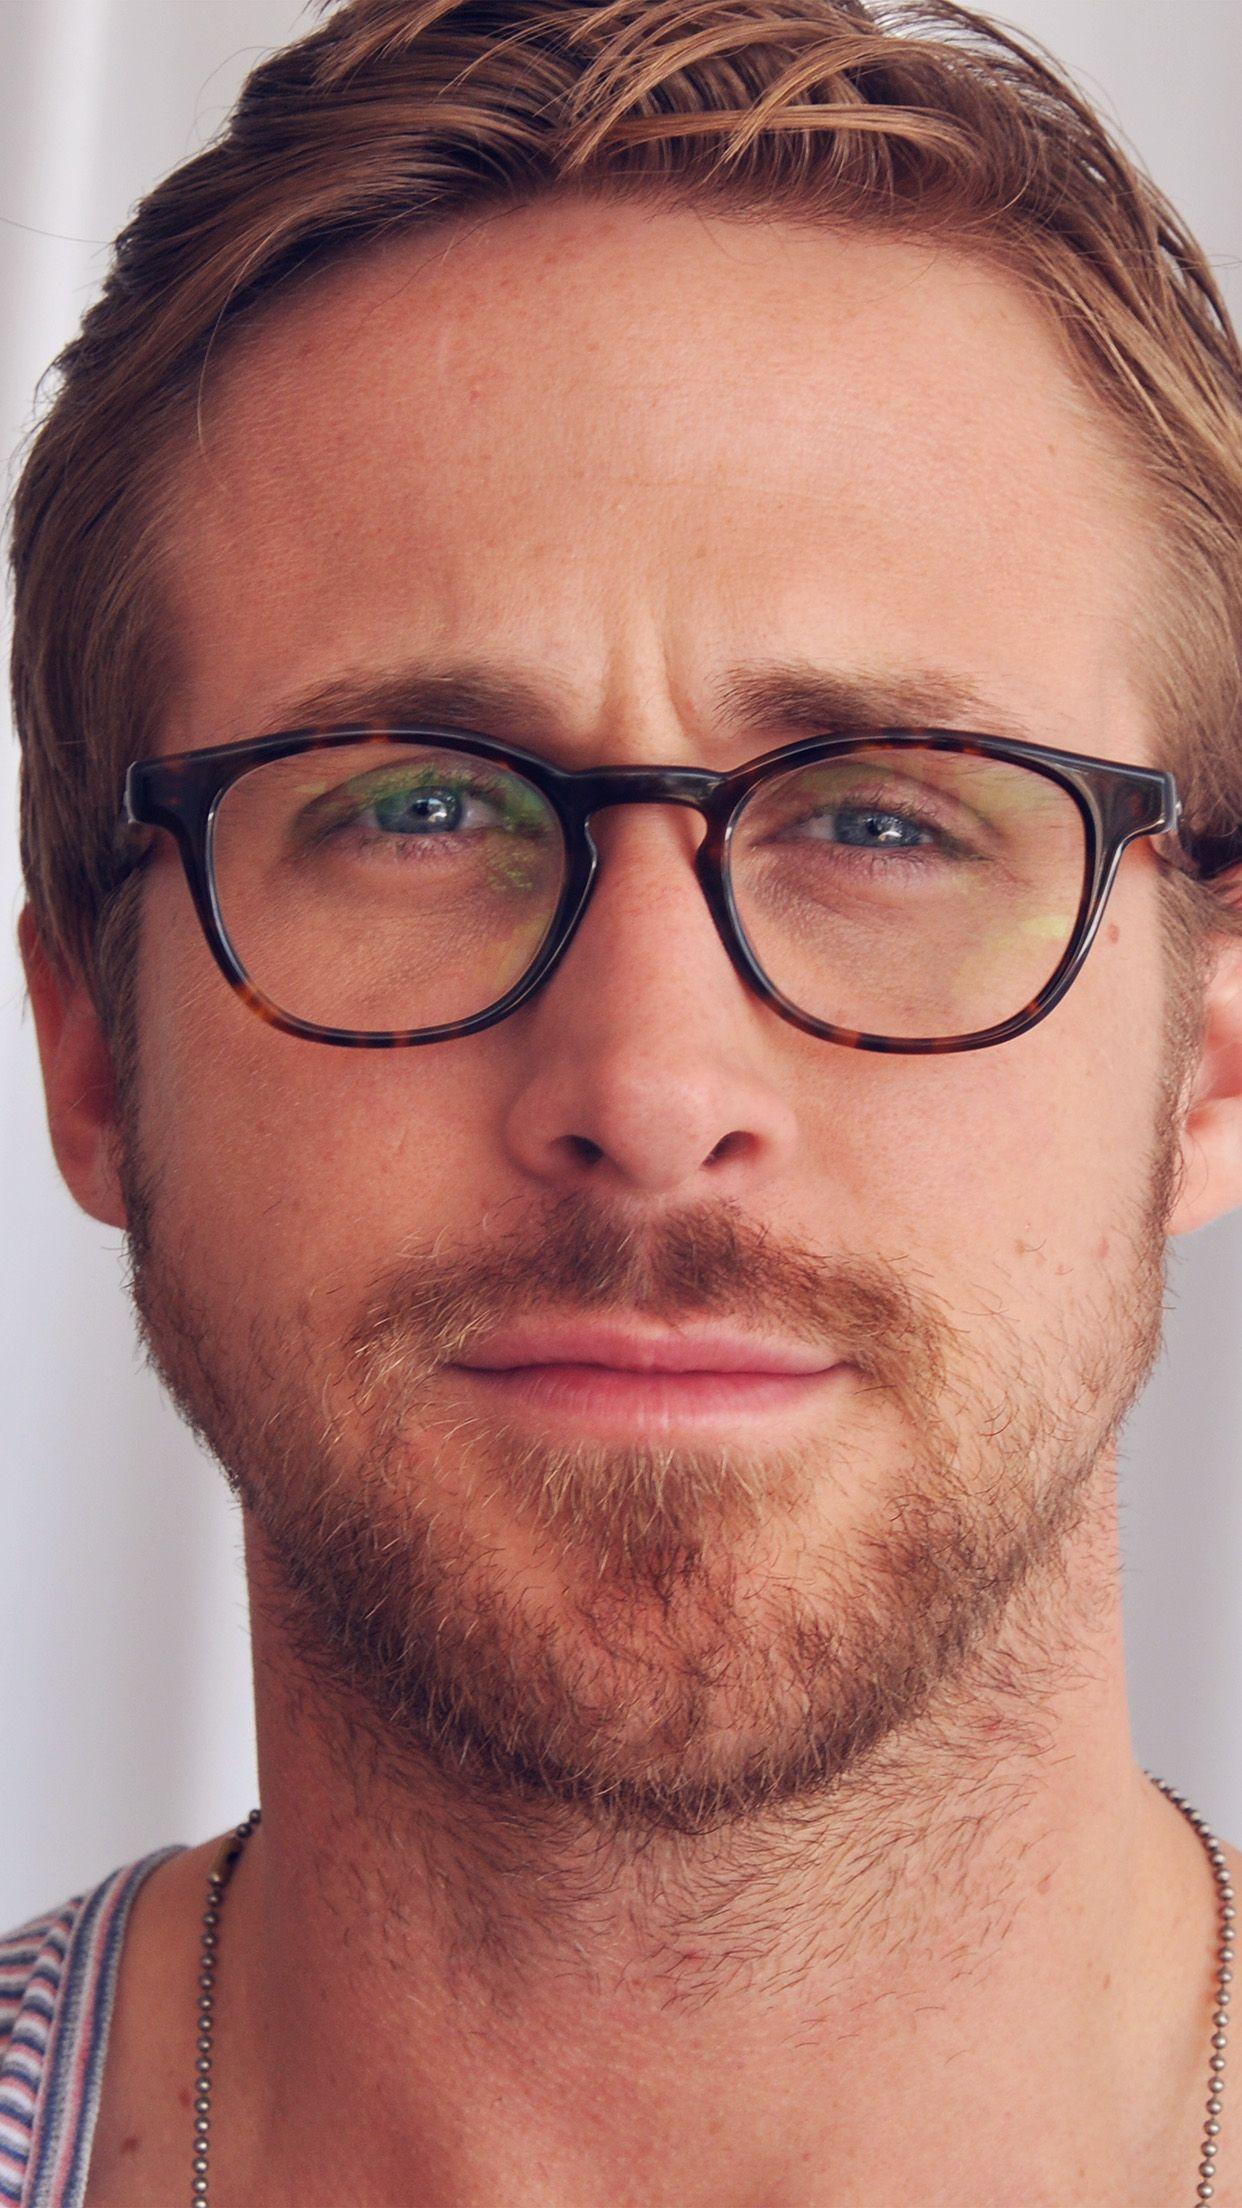 بهترین عکس رایان گاسلینگ Ryan Gosling از نظر طرفدارانش 